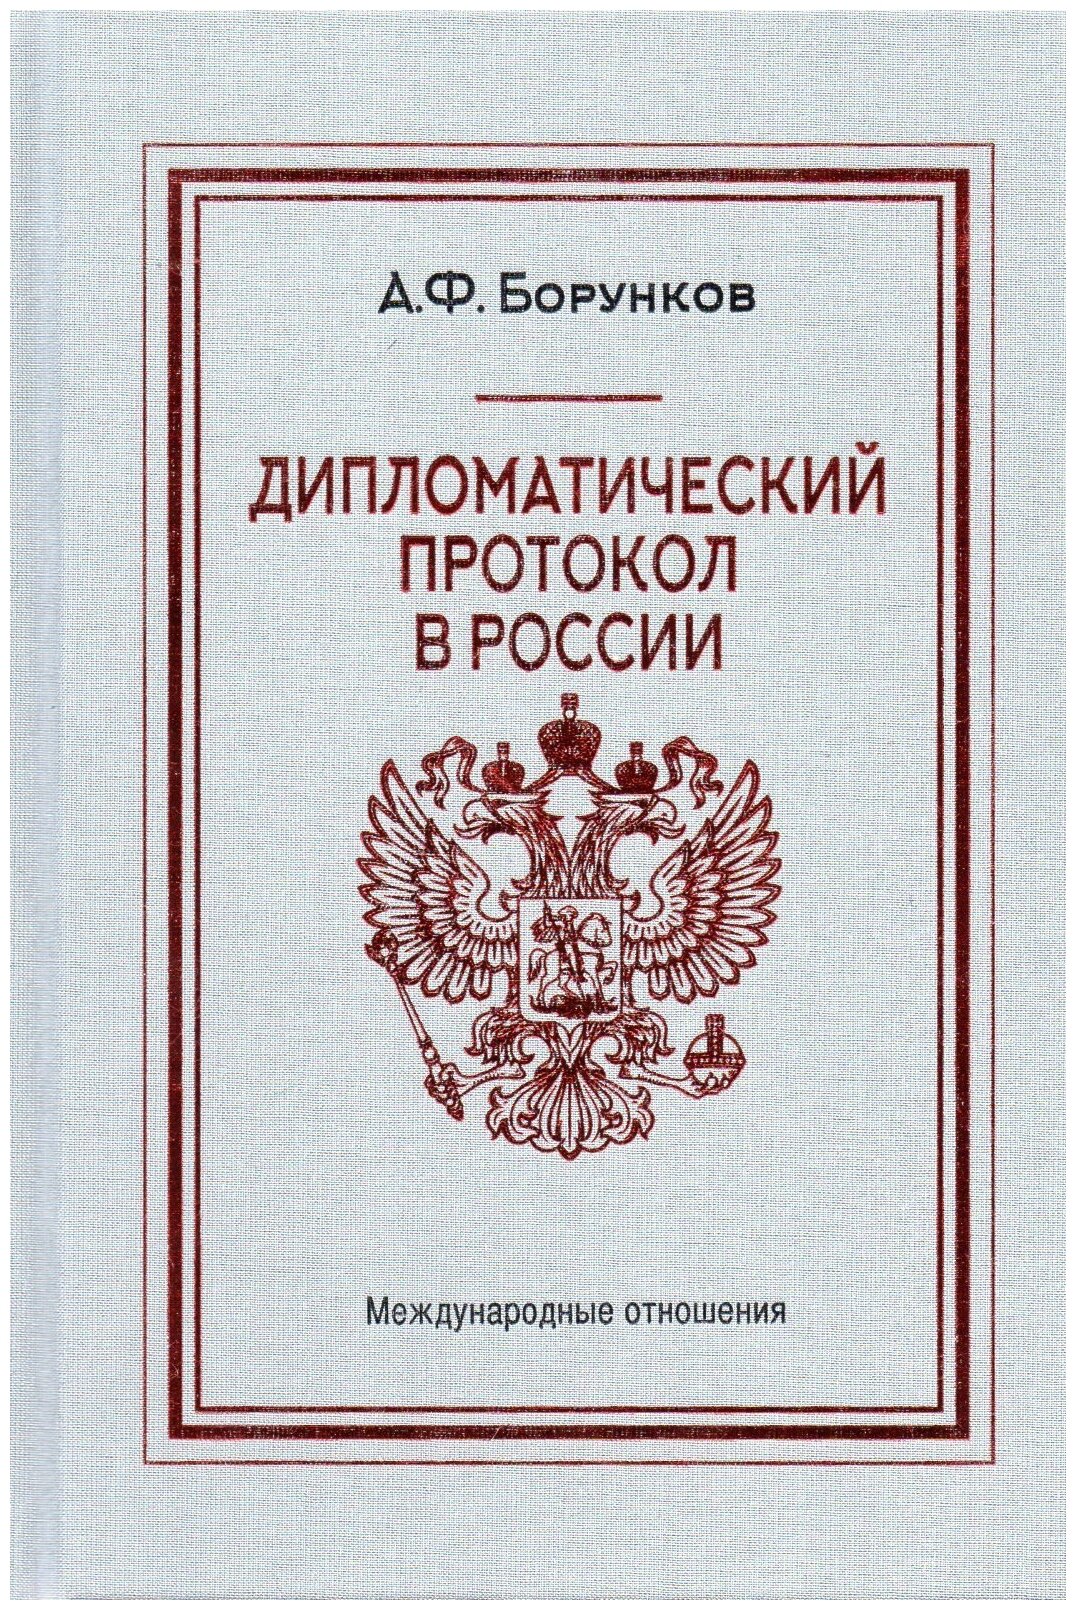 Дипломатический протокол в России - фото №2